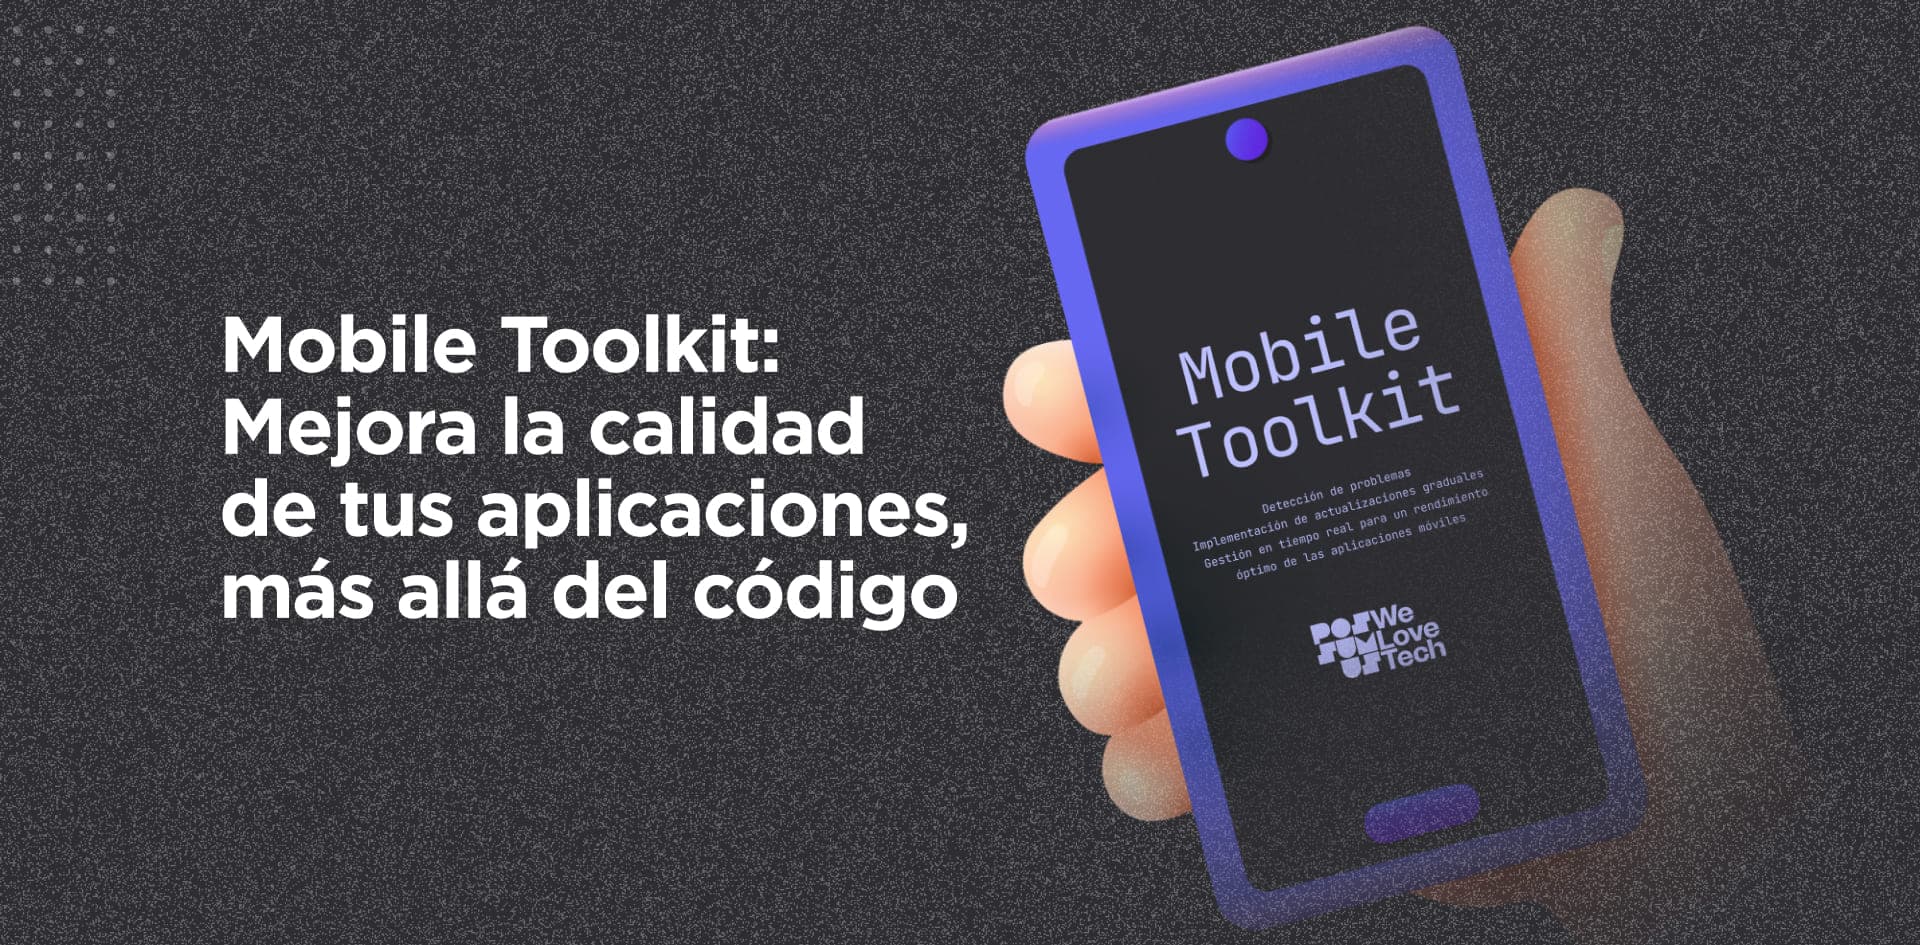 # Mobile Toolkit:
# Mejora la calidad de tus aplicaciones, más allá del código